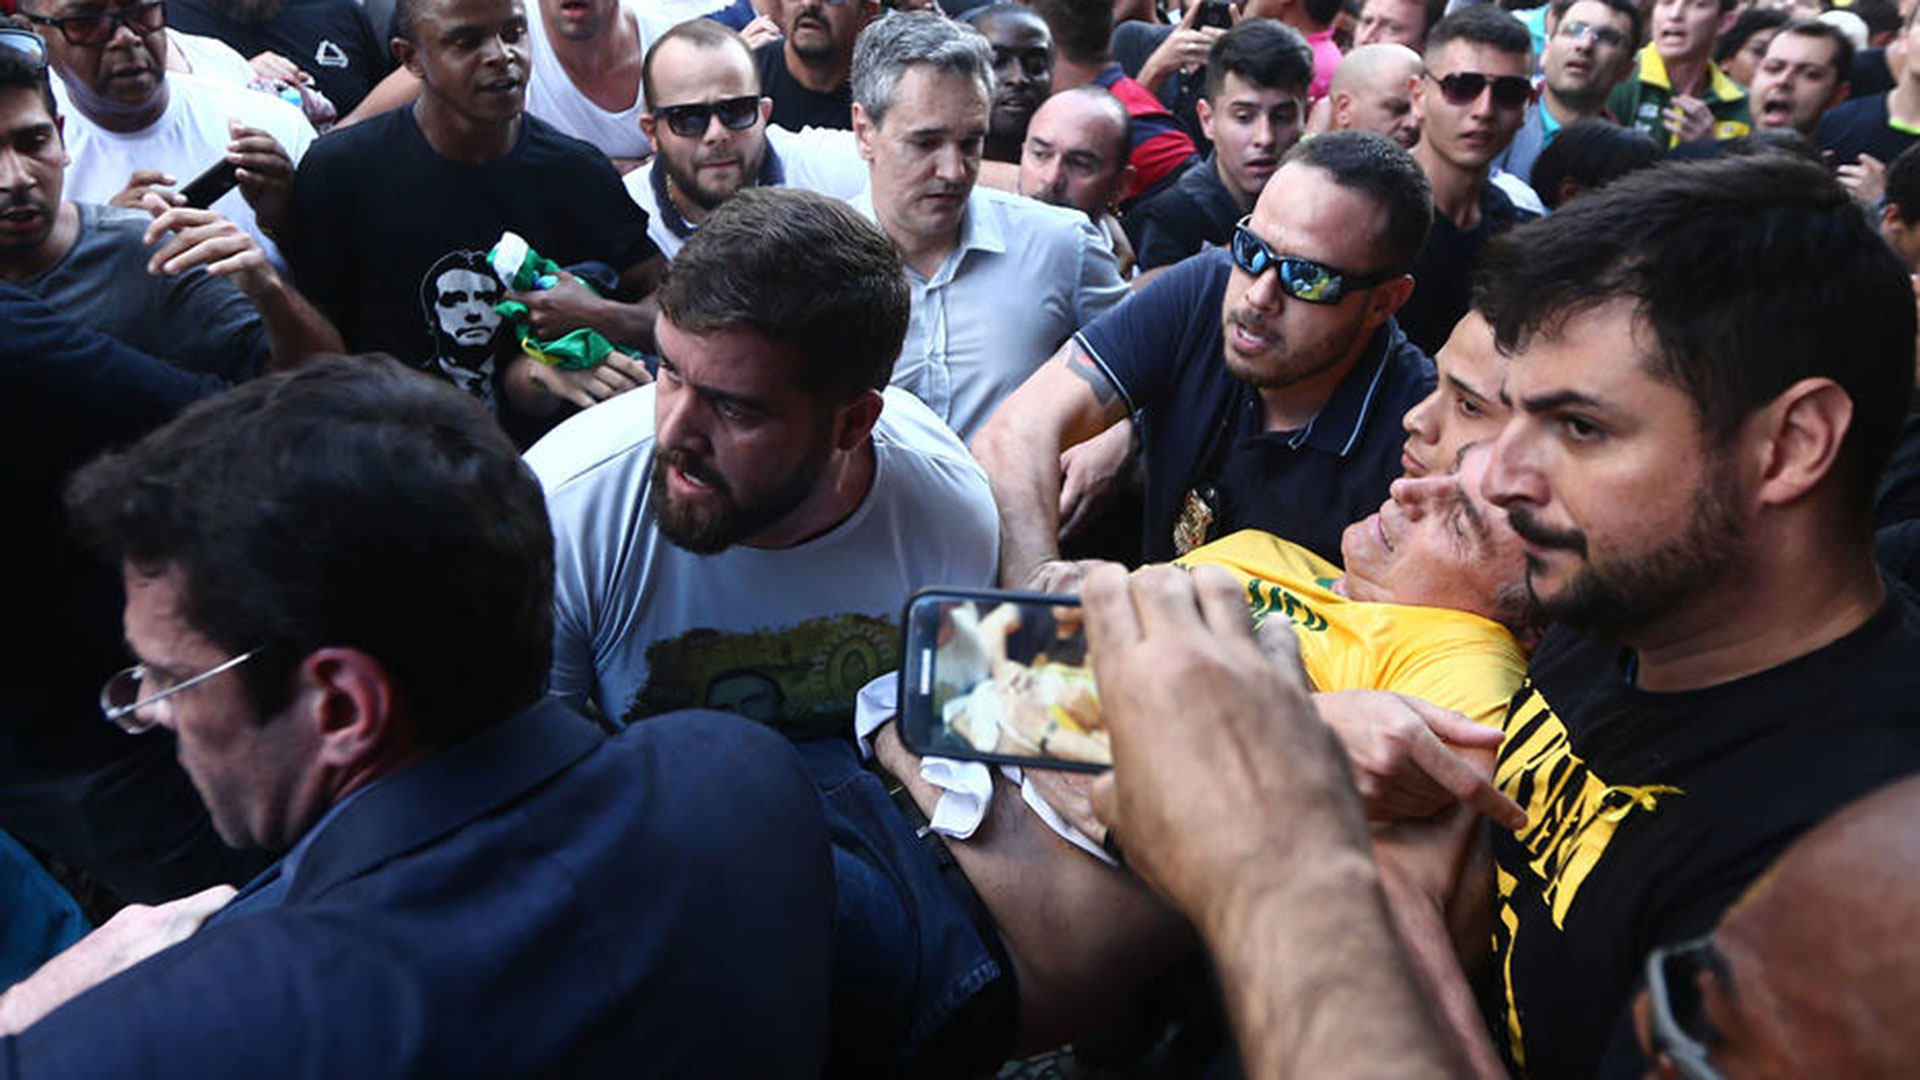 El momento en que Jair Bolsonaro es retirado del acto de campaña donde fue apuñalado